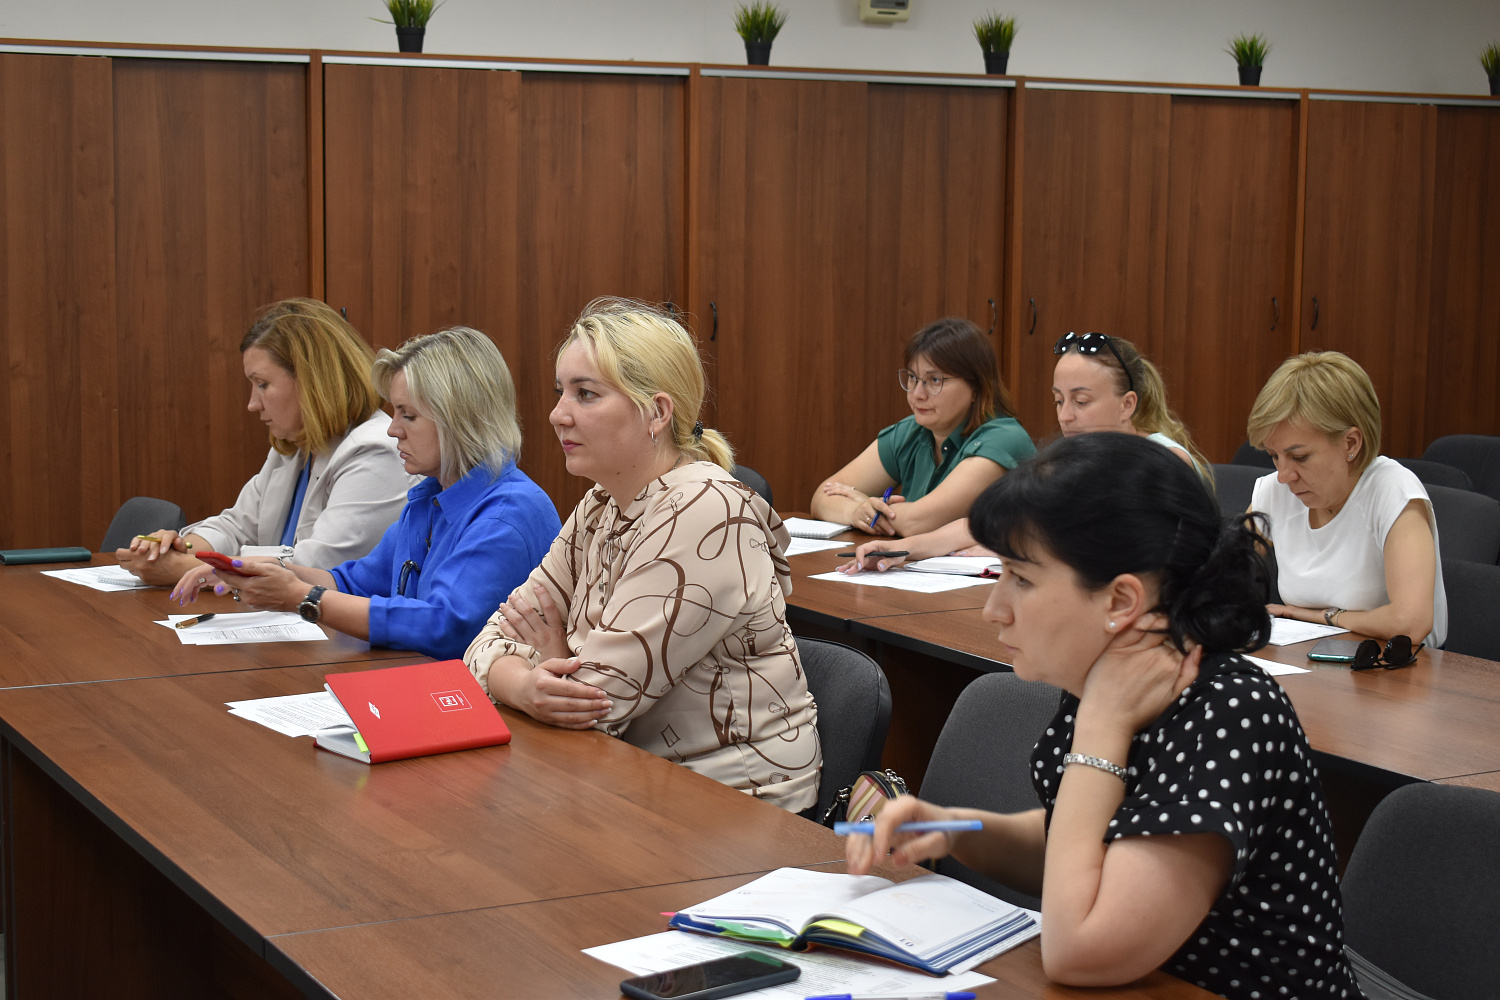 15 июня 2022 г.  в ТПП Чувашской Республики состоялся семинар-совещание руководителей кадровых служб предприятий Чувашской Республики